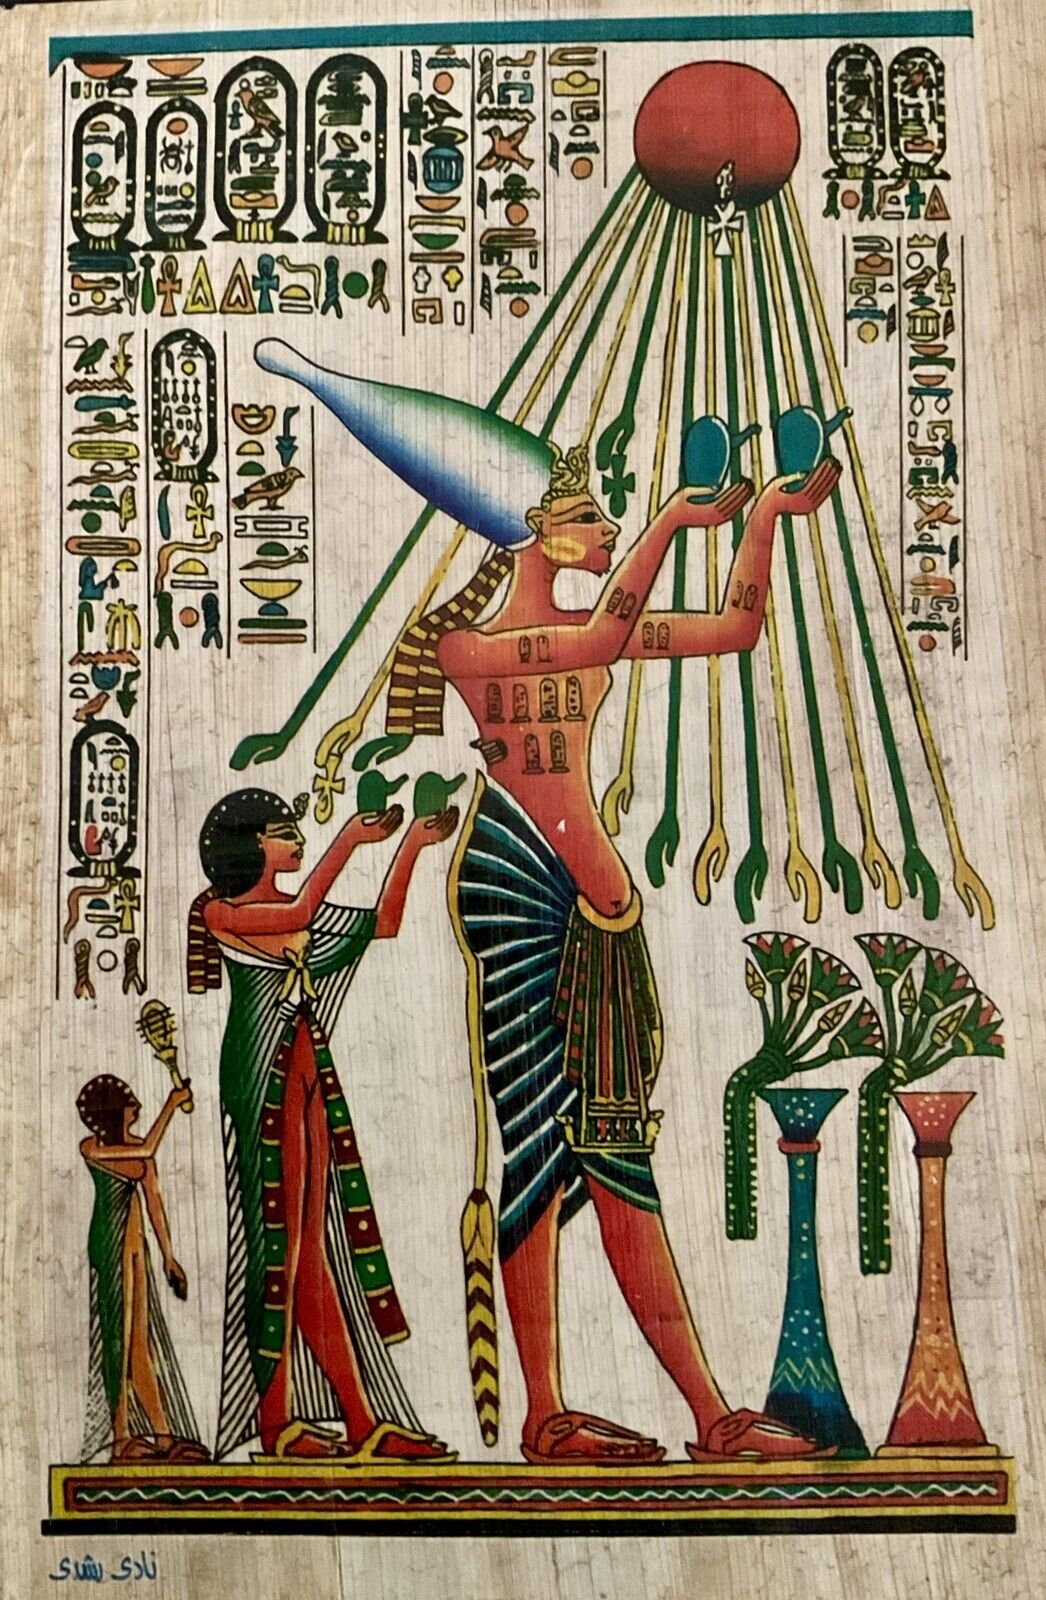 Egyptian papyrus Handmade Akhenaten &family offer sacrifices to the sun 8x12”